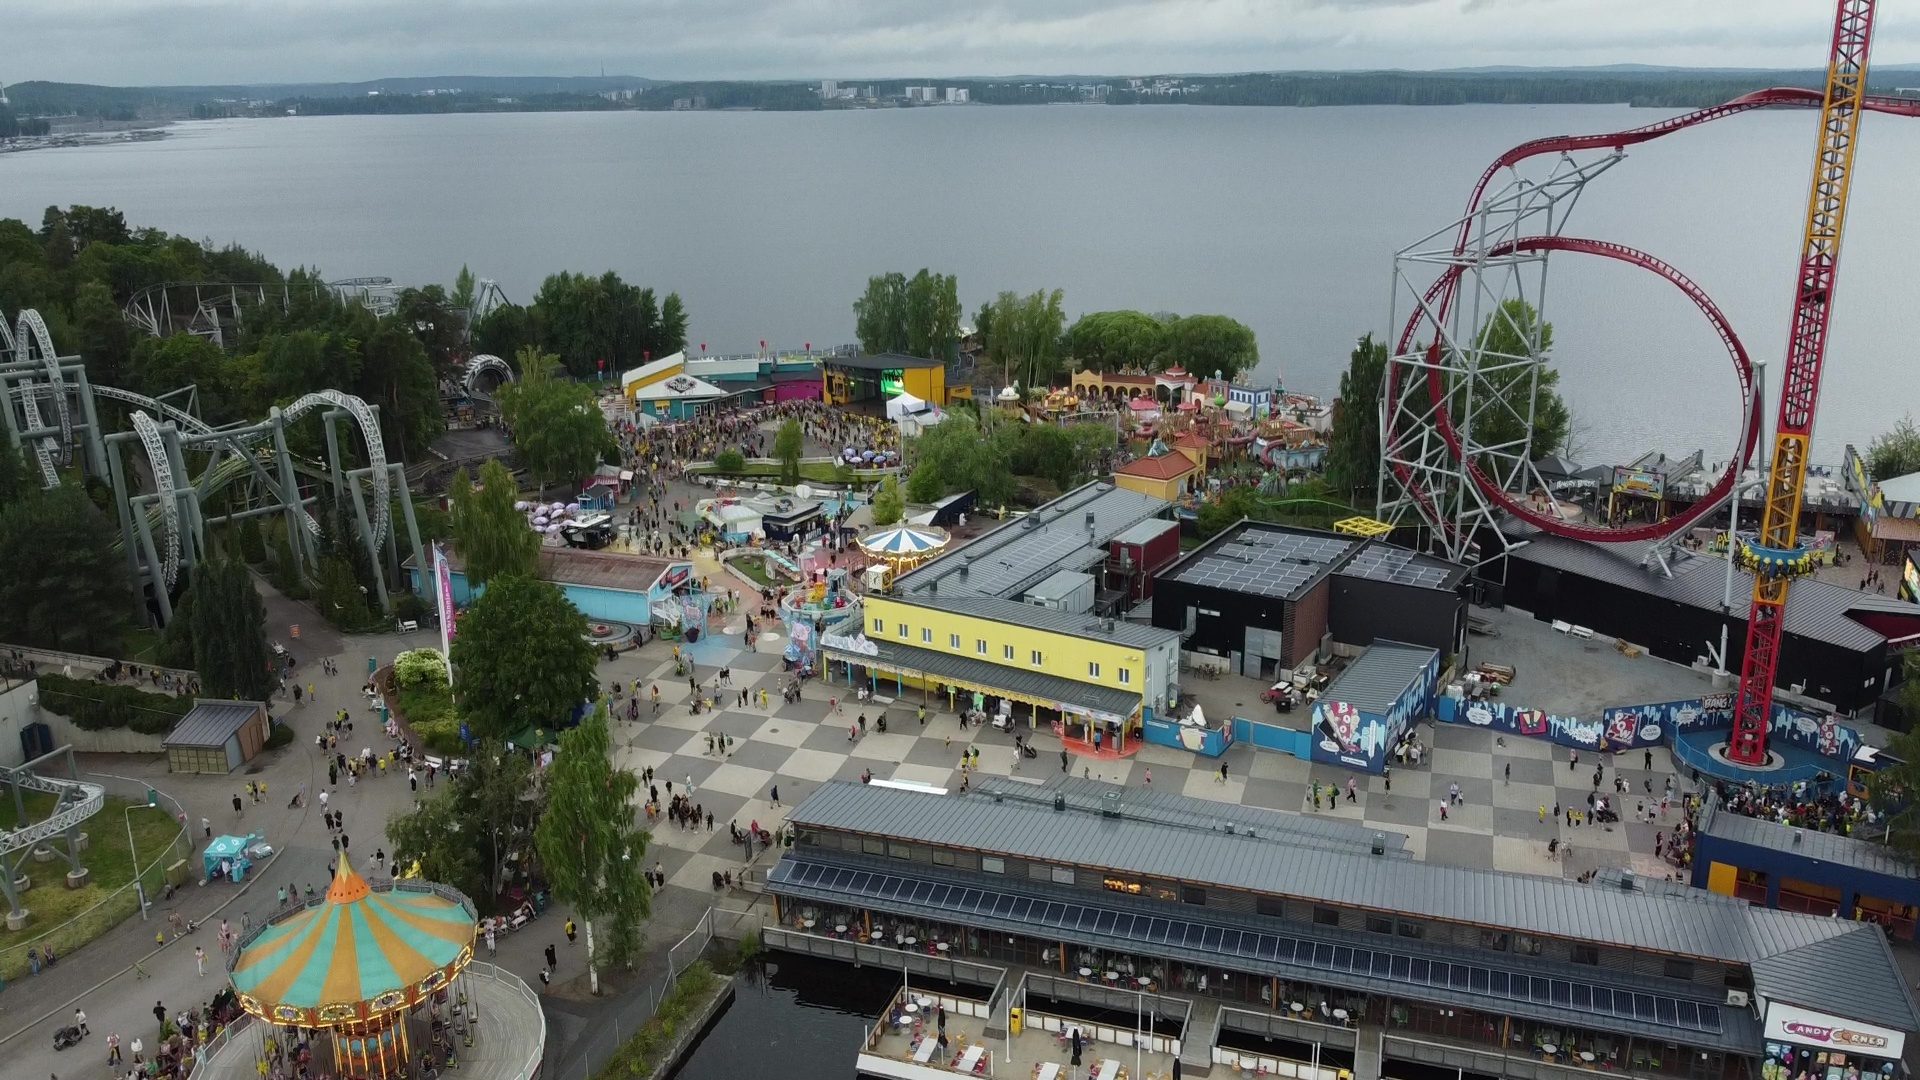 Särkänniemi theme park from a drone